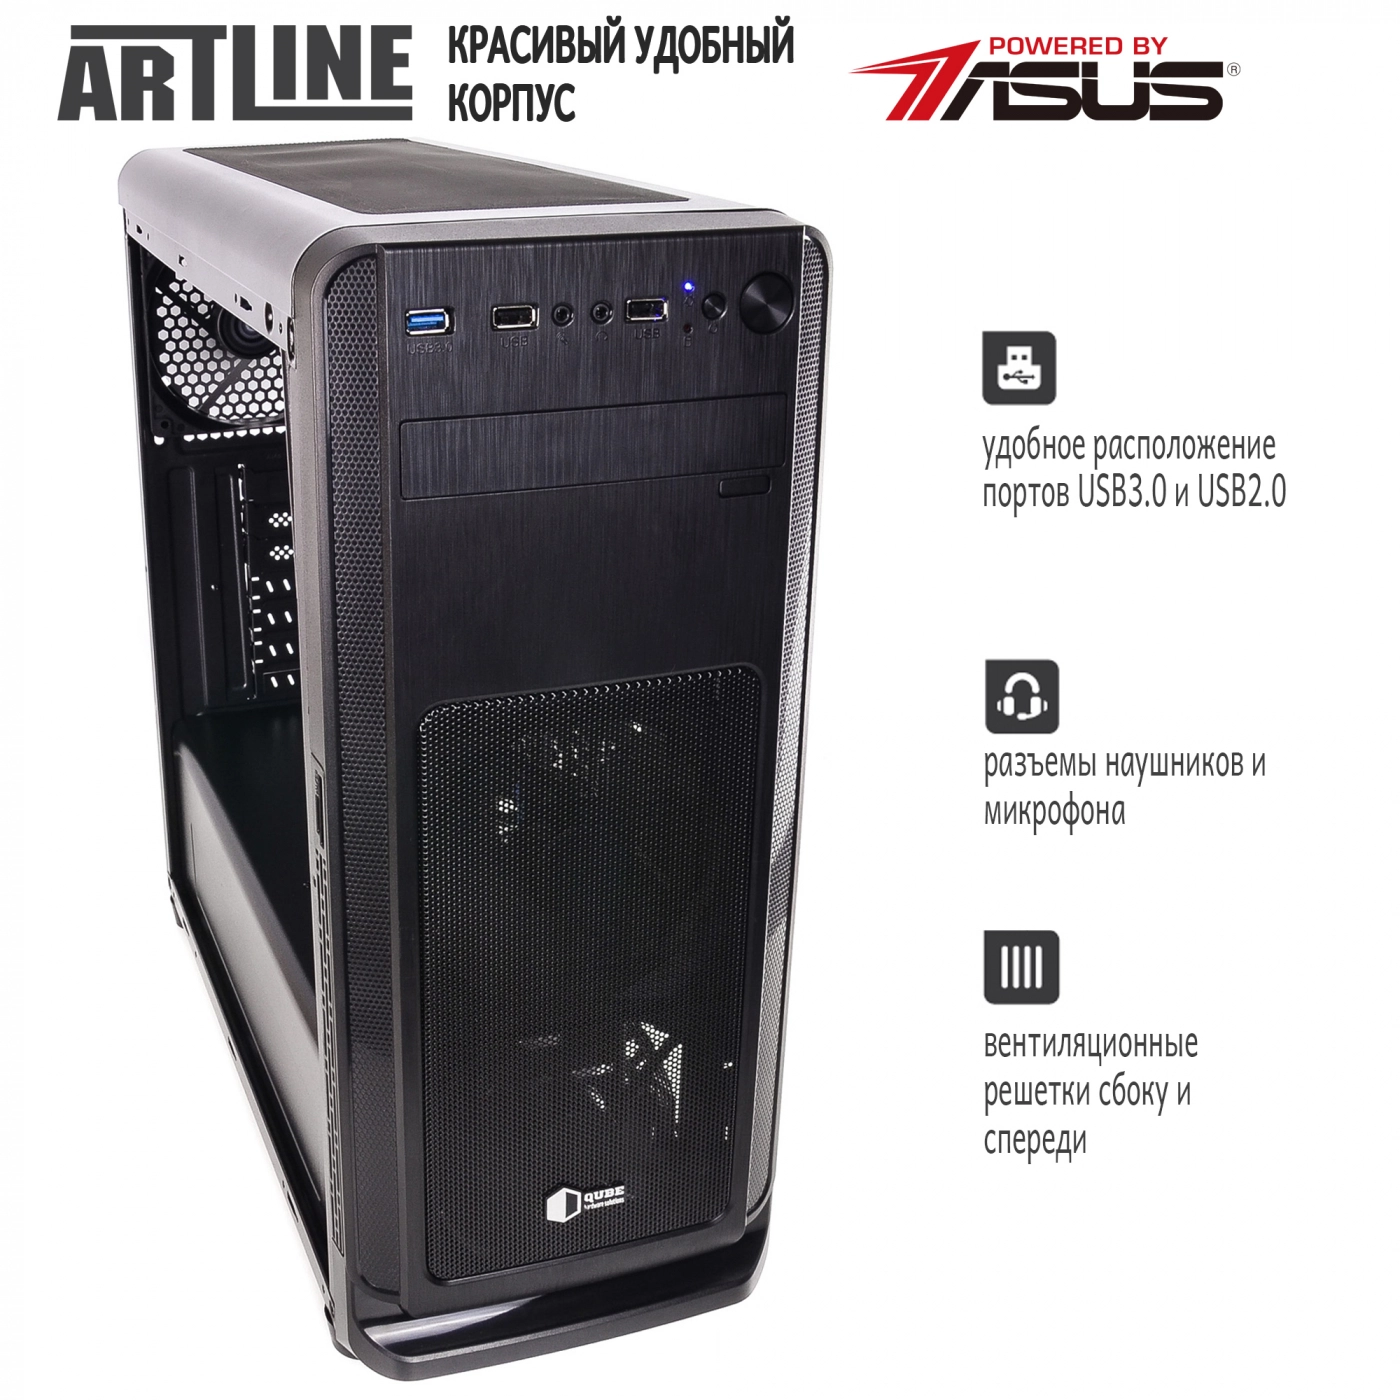 Купить Сервер ARTLINE Business T63v02 - фото 4